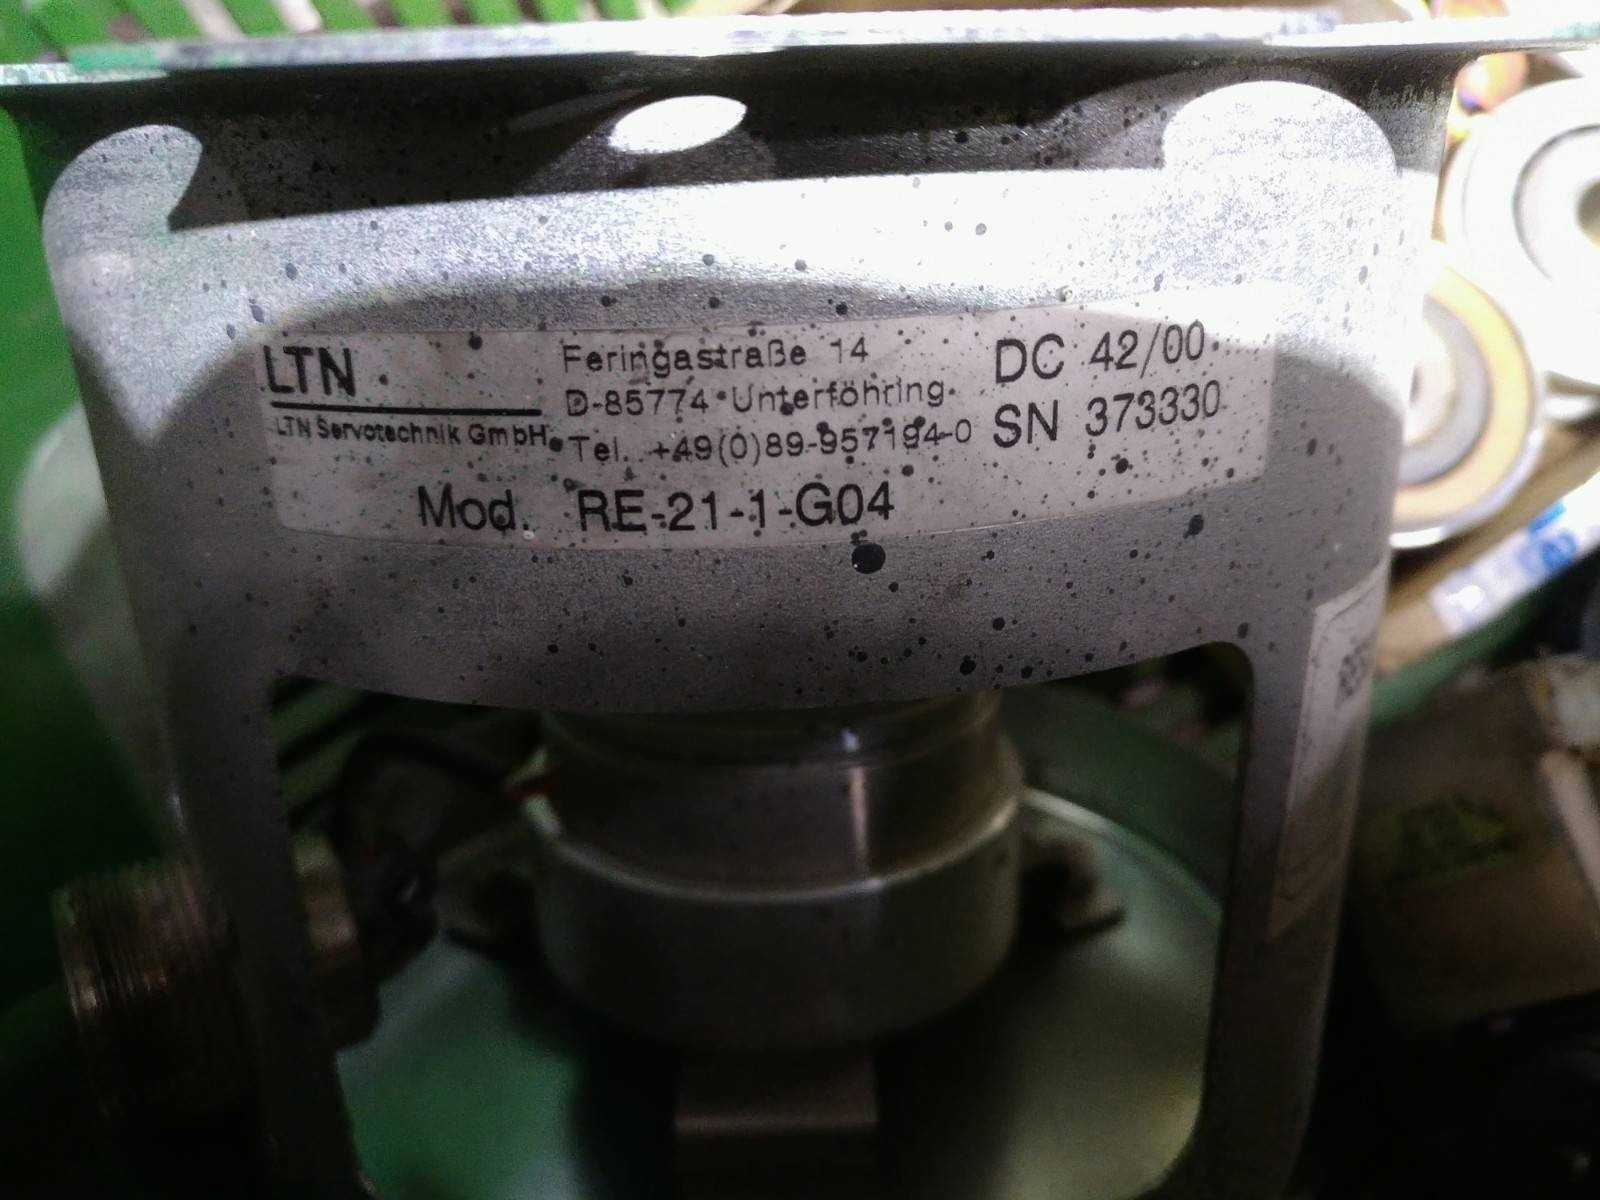 Resolvery enkodery hamulce z servomotorów Kuka Allen Bradley